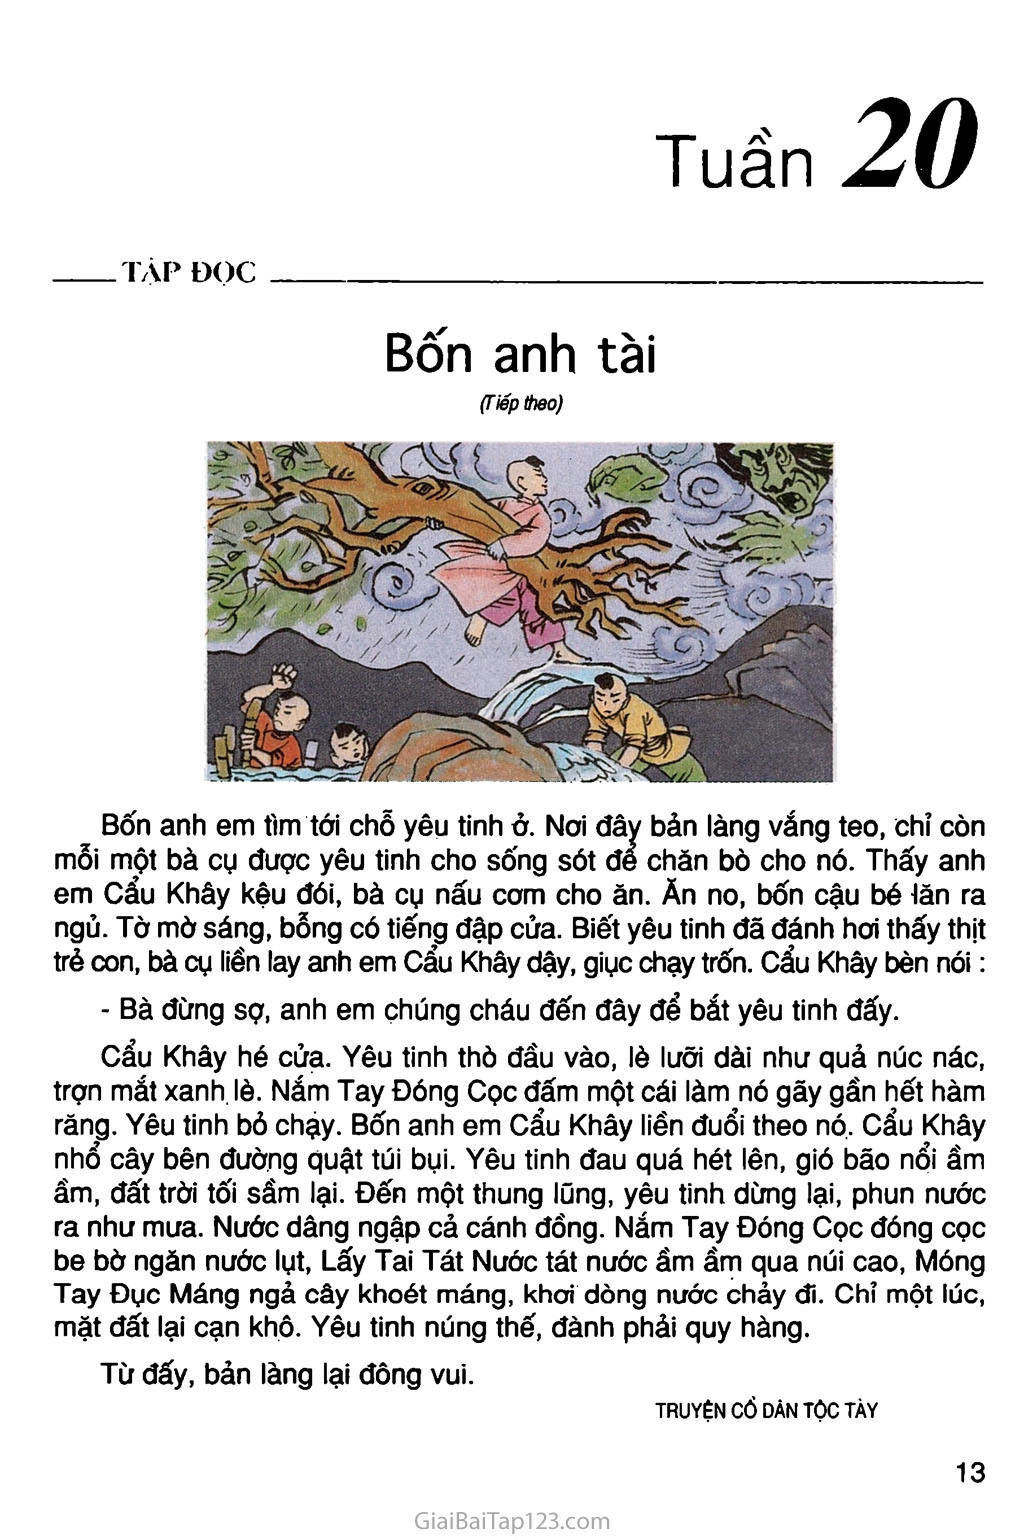 SGK Tiếng Việt lớp 4: SGK Tiếng Việt lớp 4 là sách giáo khoa quan trọng giúp các bé học tiếng Việt. Qua hình ảnh liên quan đến SGK, bạn sẽ được nhìn thấy những hoạt động và bài học thú vị mà các bé có thể học được từ sách này, giúp các em có thêm động lực để học tập.